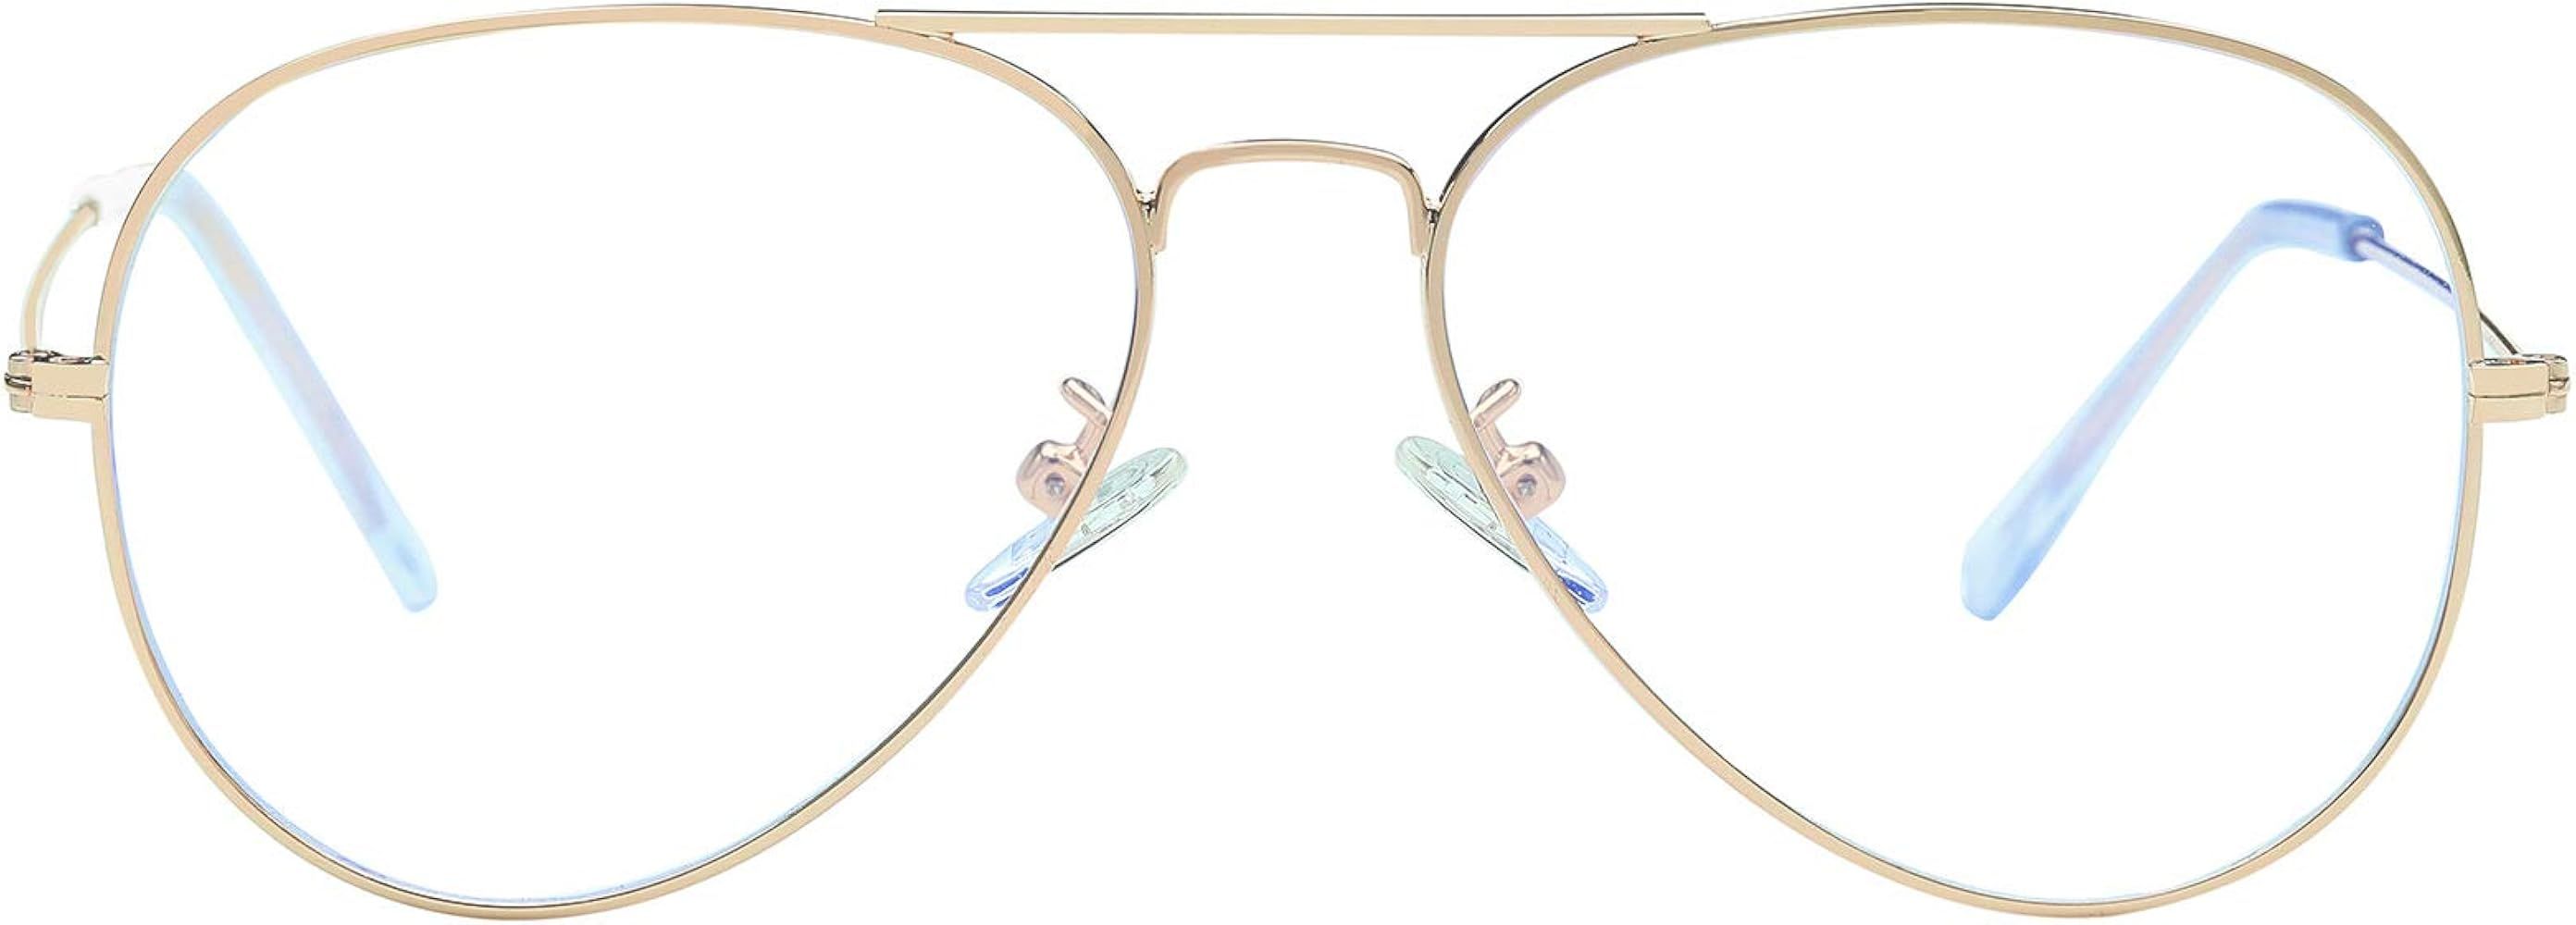 Blue Light Blocking Aviator Glasses for Women Men Lightweight Metal Frame Computer Glasses Anti-e... | Amazon (US)